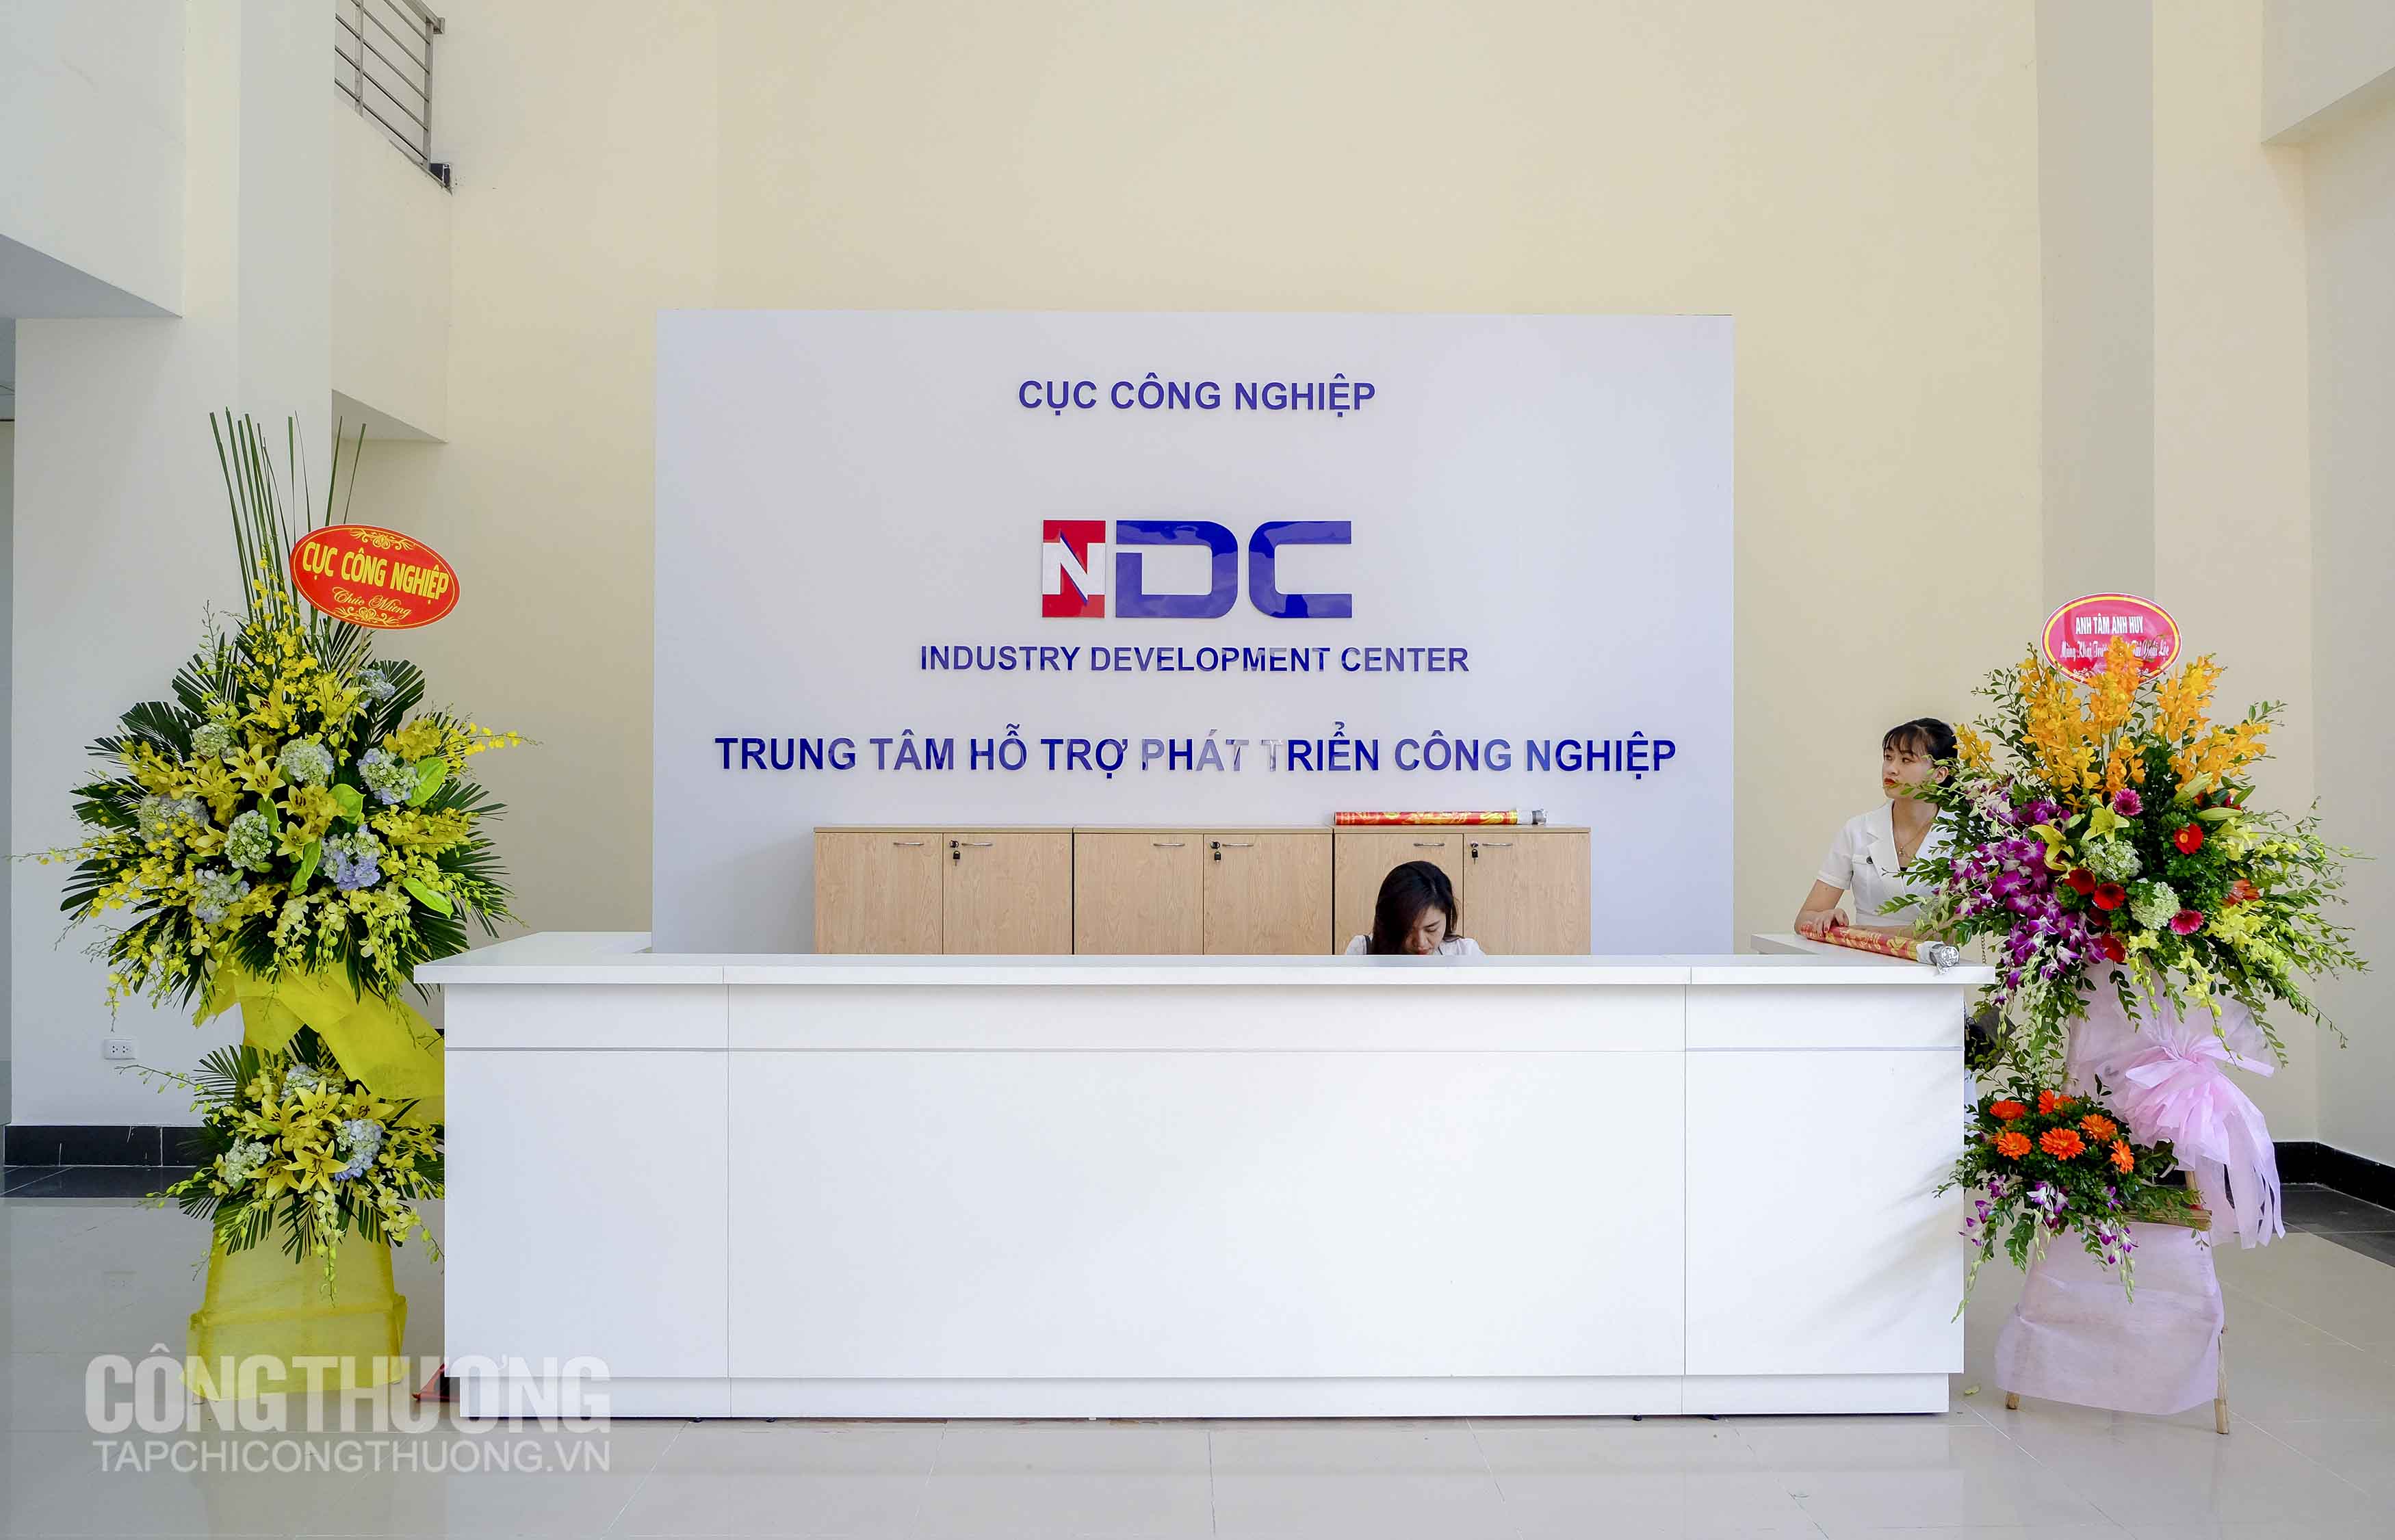 Trung tâm hỗ trợ phát triển công nghiệp đầu tiên của Việt Nam đặt trụ sở tại Hà Nội